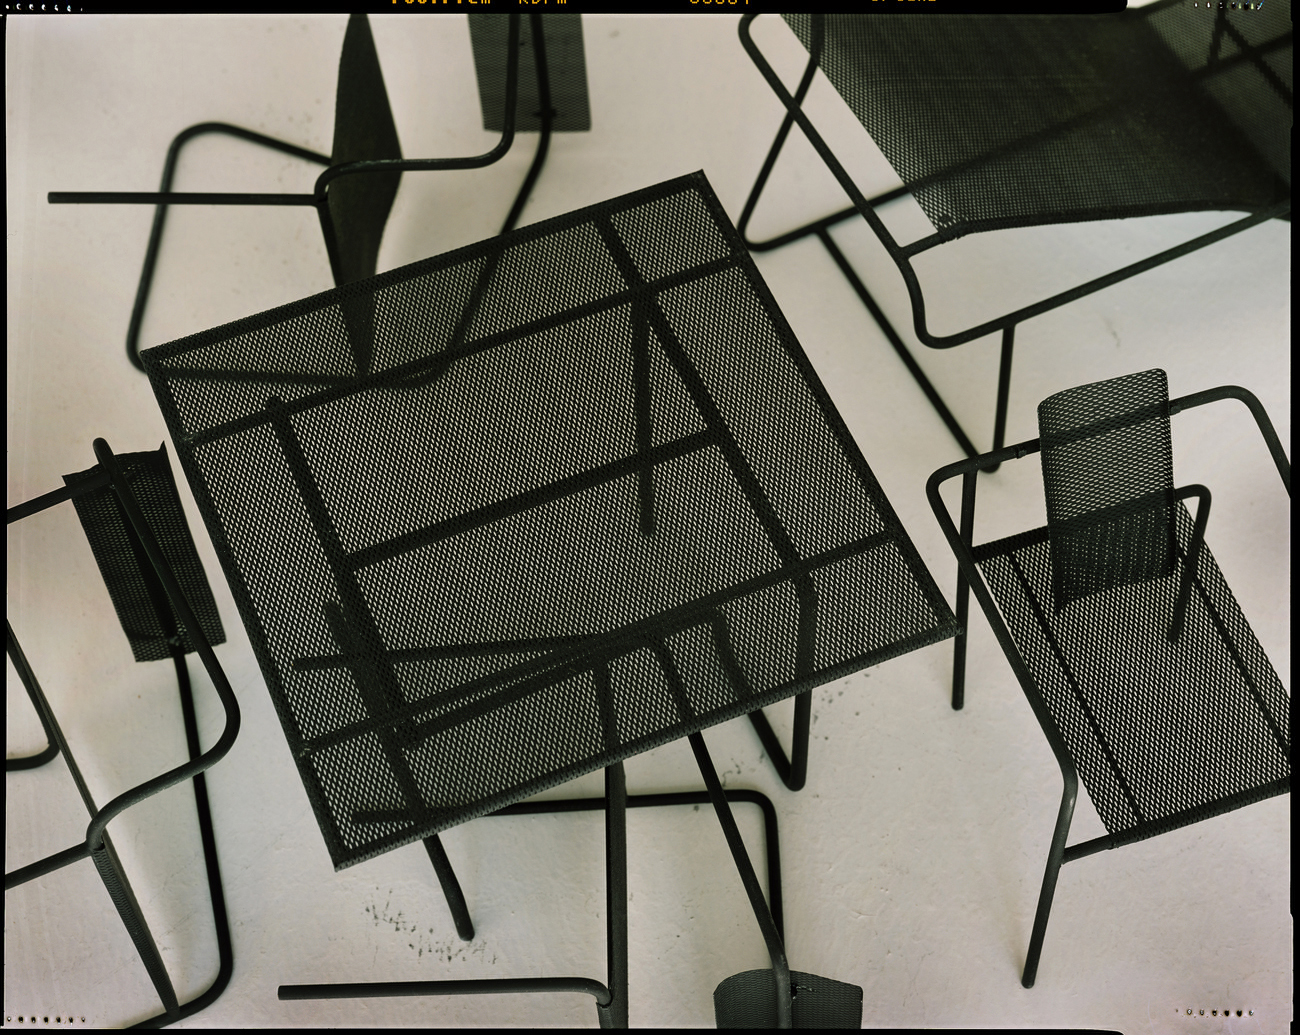 Lawn furniture models, Richard Meier exhibit, Jersey City, New Jersey, 2015